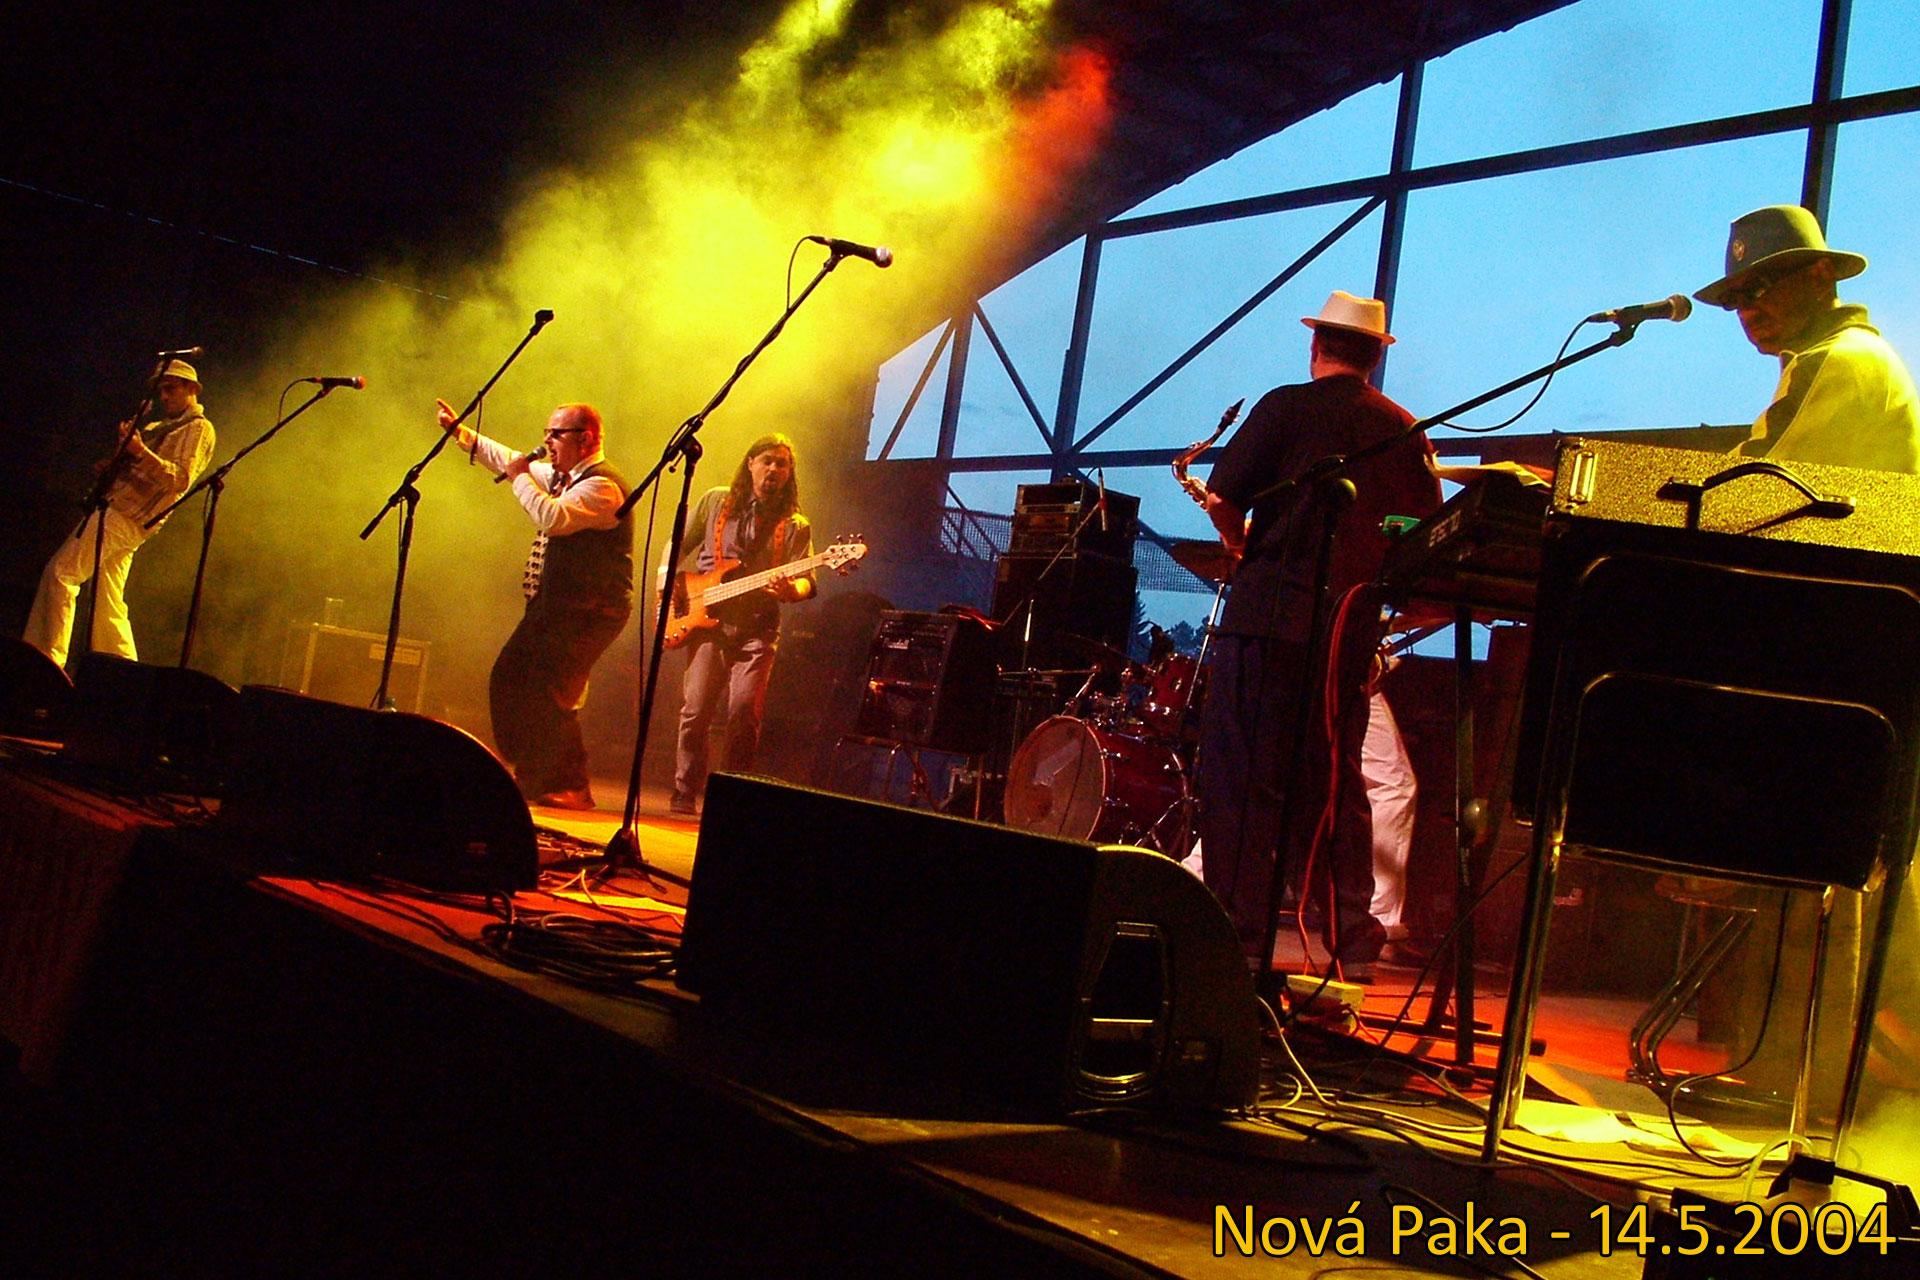 Nová Paka, 14.5.2004